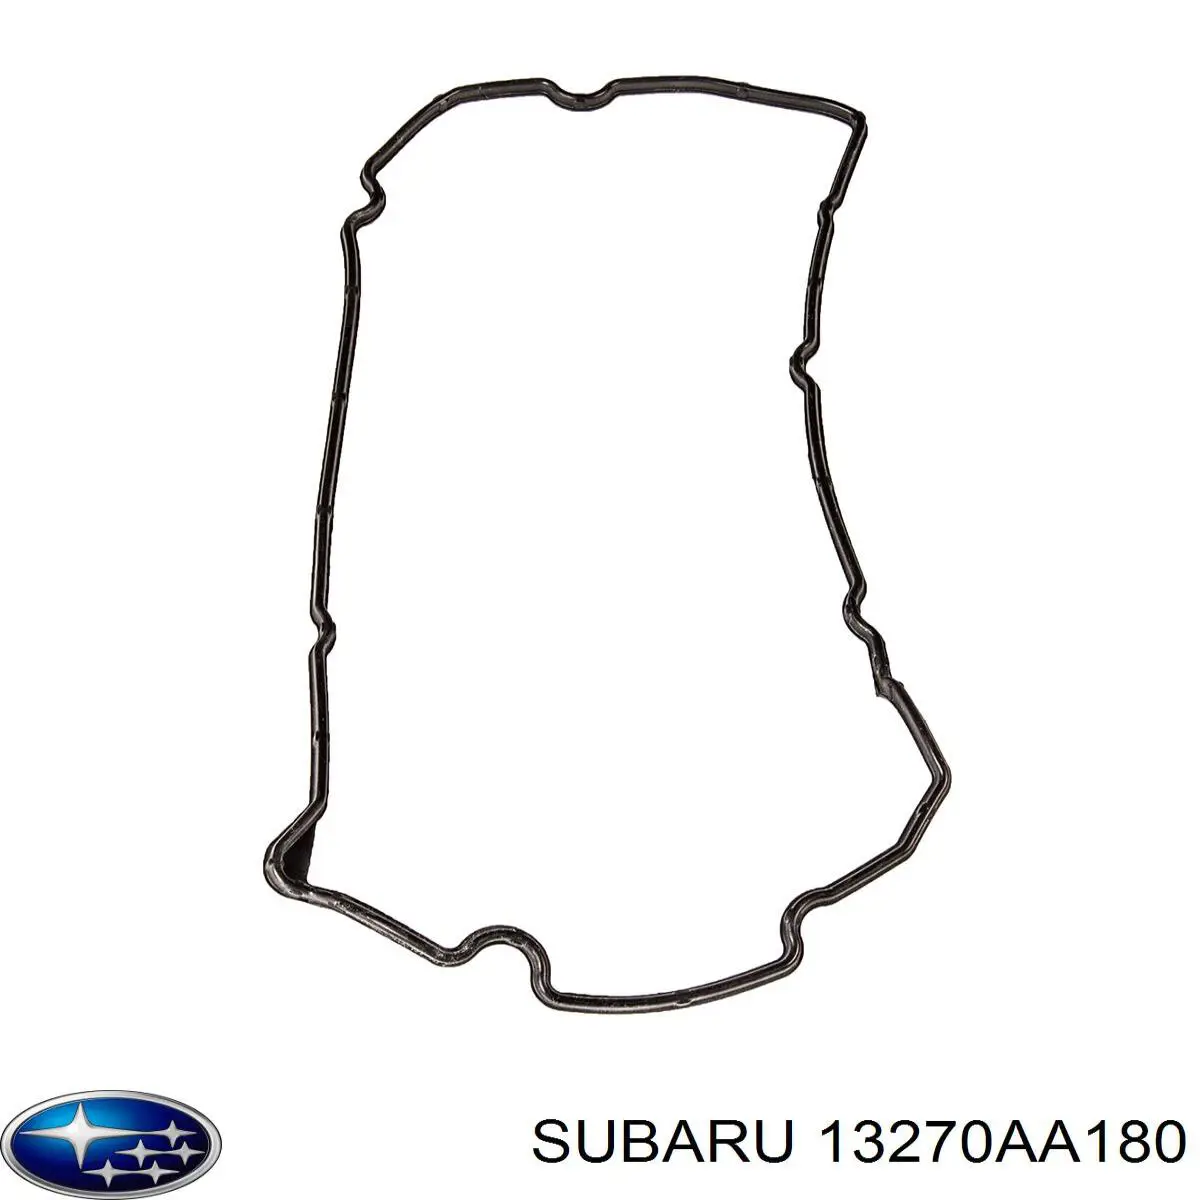 Junta, tapa de culata de cilindro derecha para Subaru Tribeca 